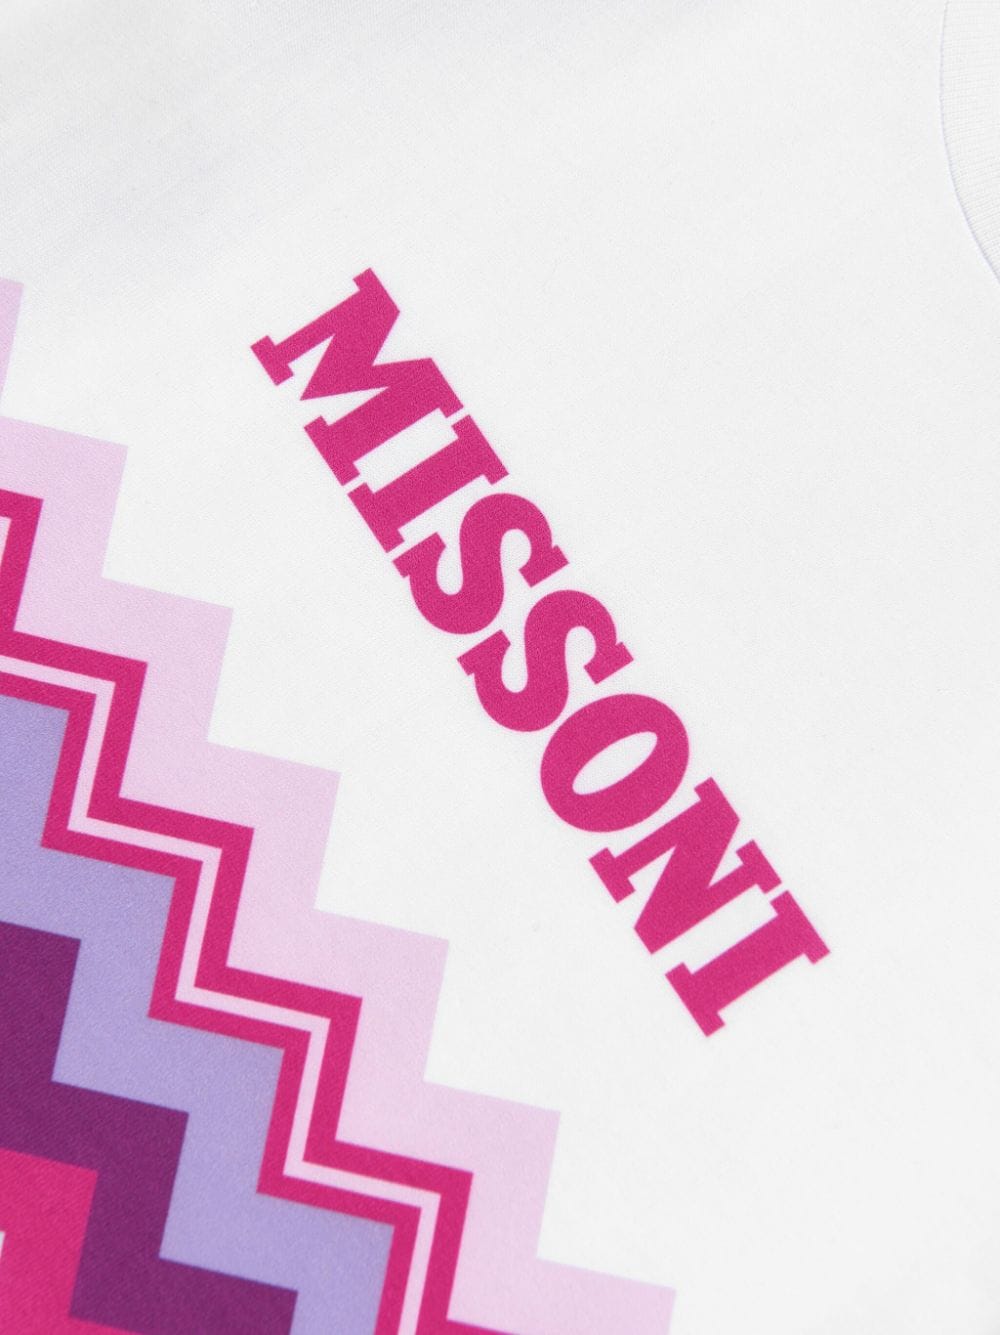 Missoni Kids T-shirt met zigzag-print Wit